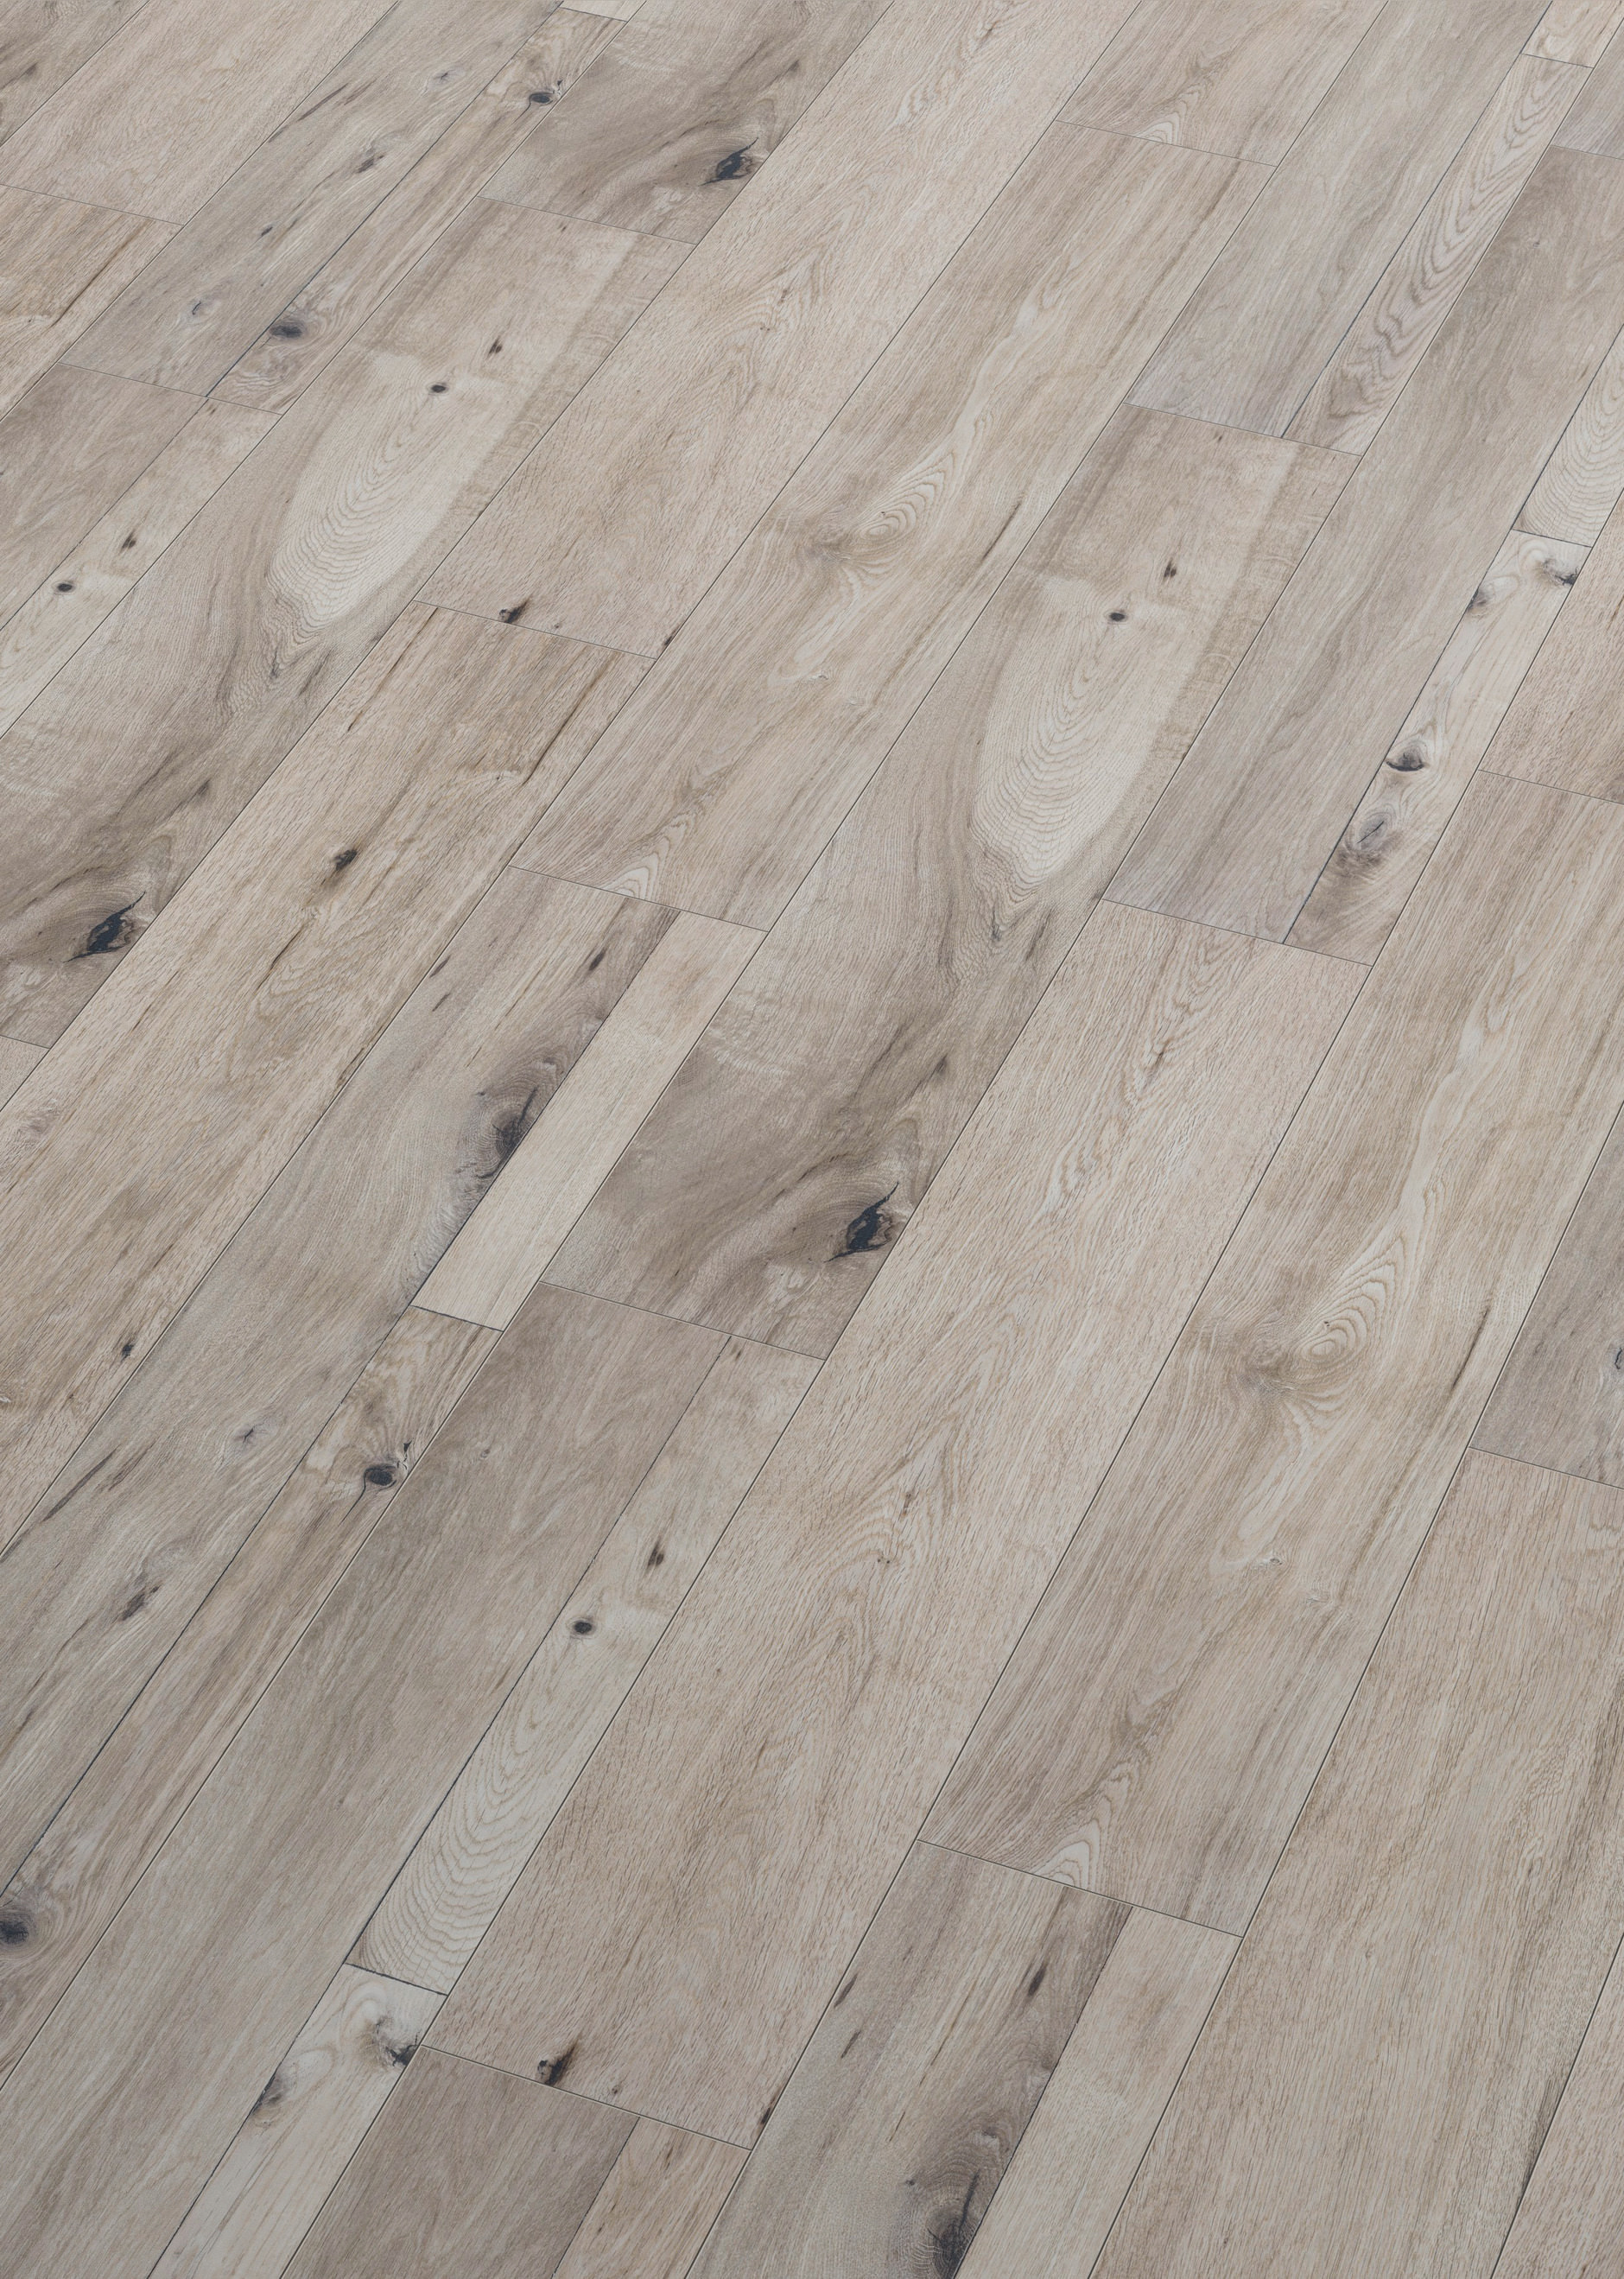 Oak Horizon Grey, Horizon Hardwood Floors